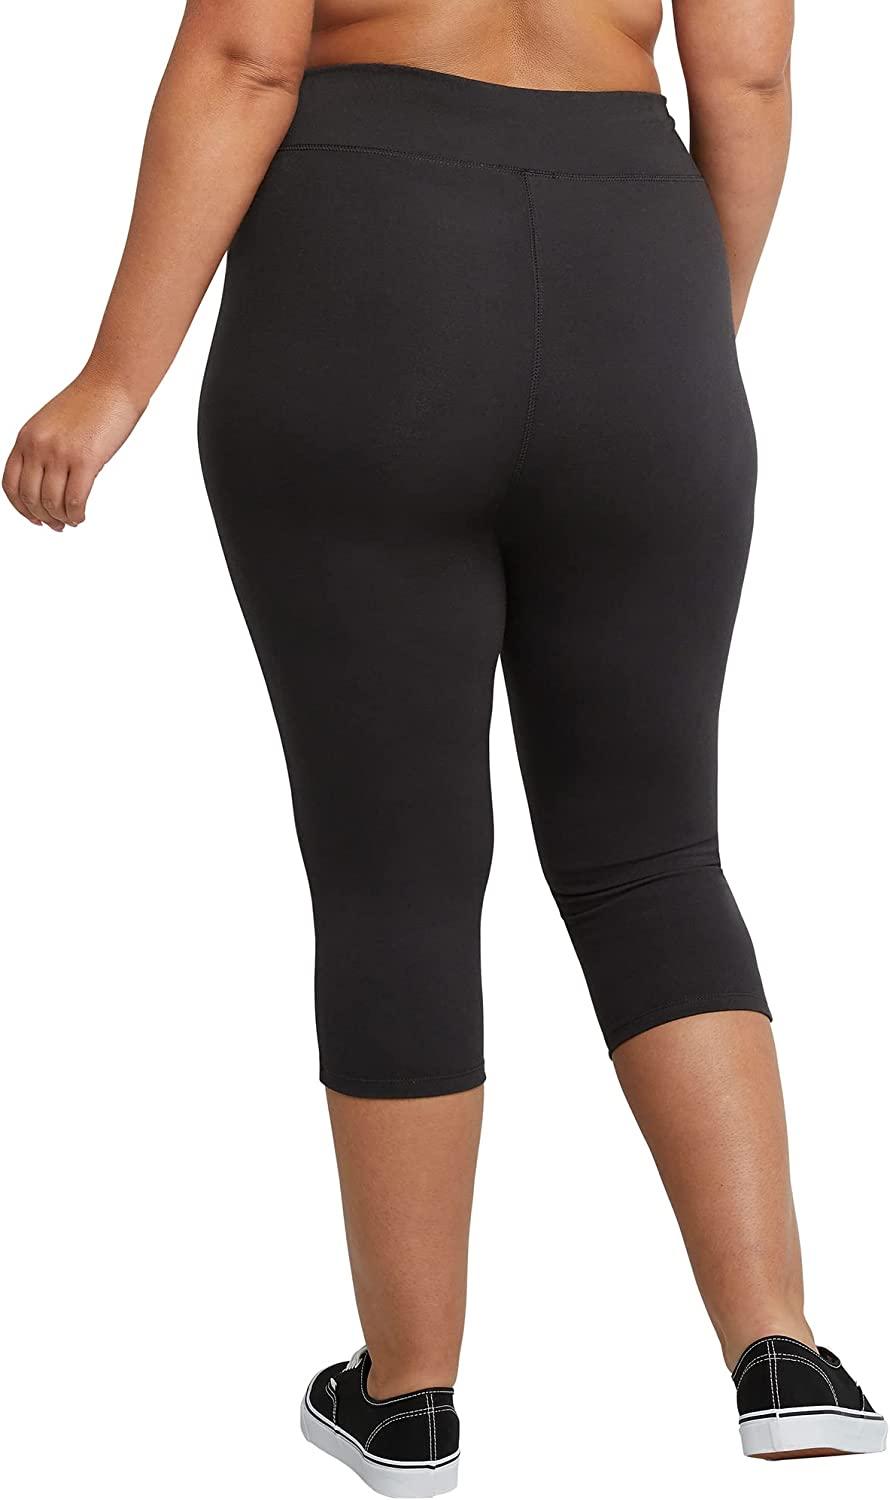 Capri Plus Size Leggings for Women for sale | eBay